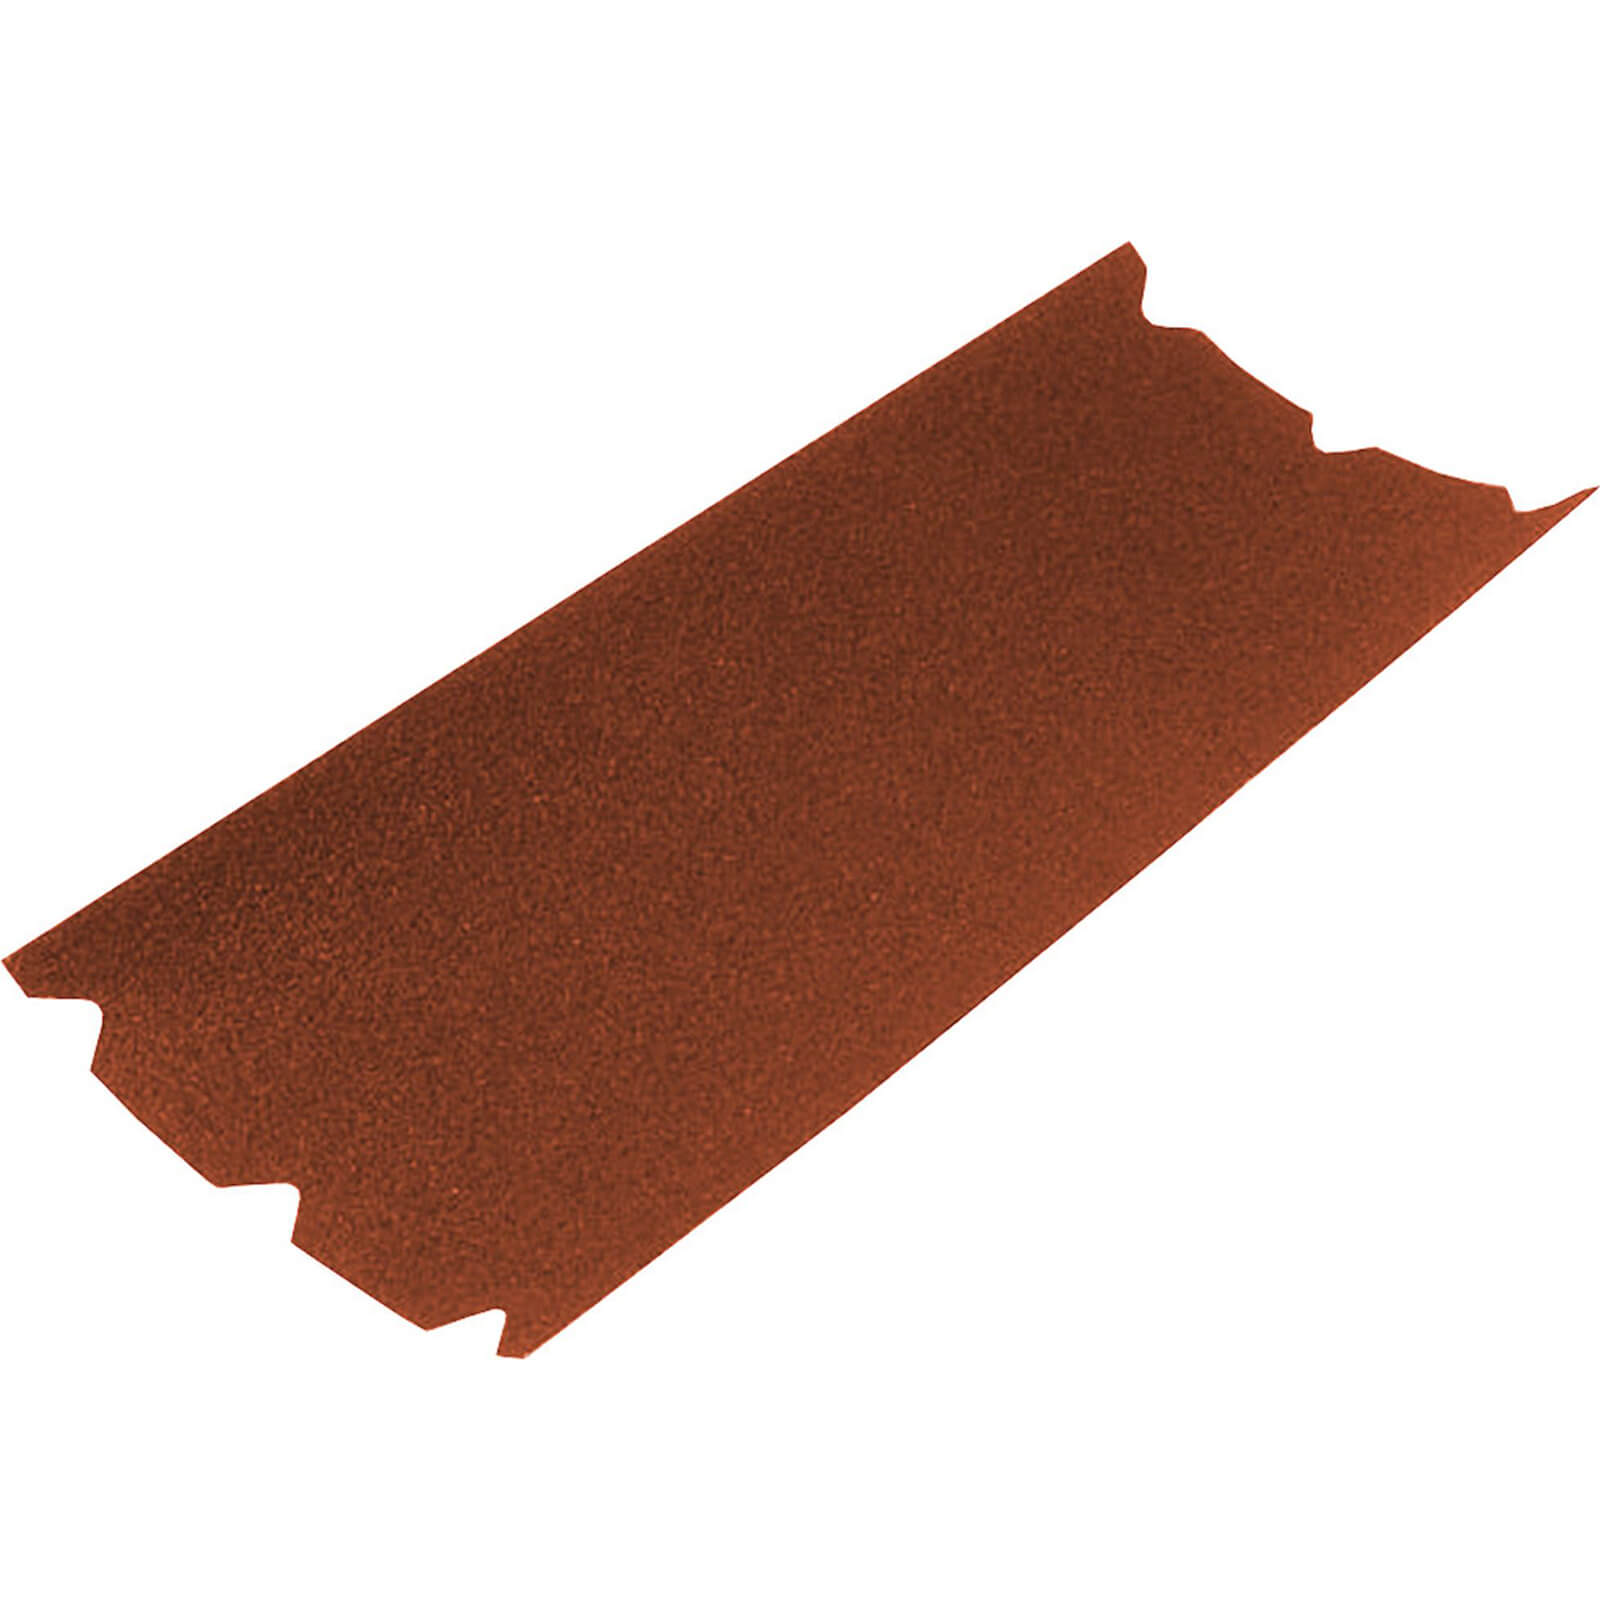 Image of Faithfull Floor Sanding Sheets 203mm x 475mm 40g Pack of 1